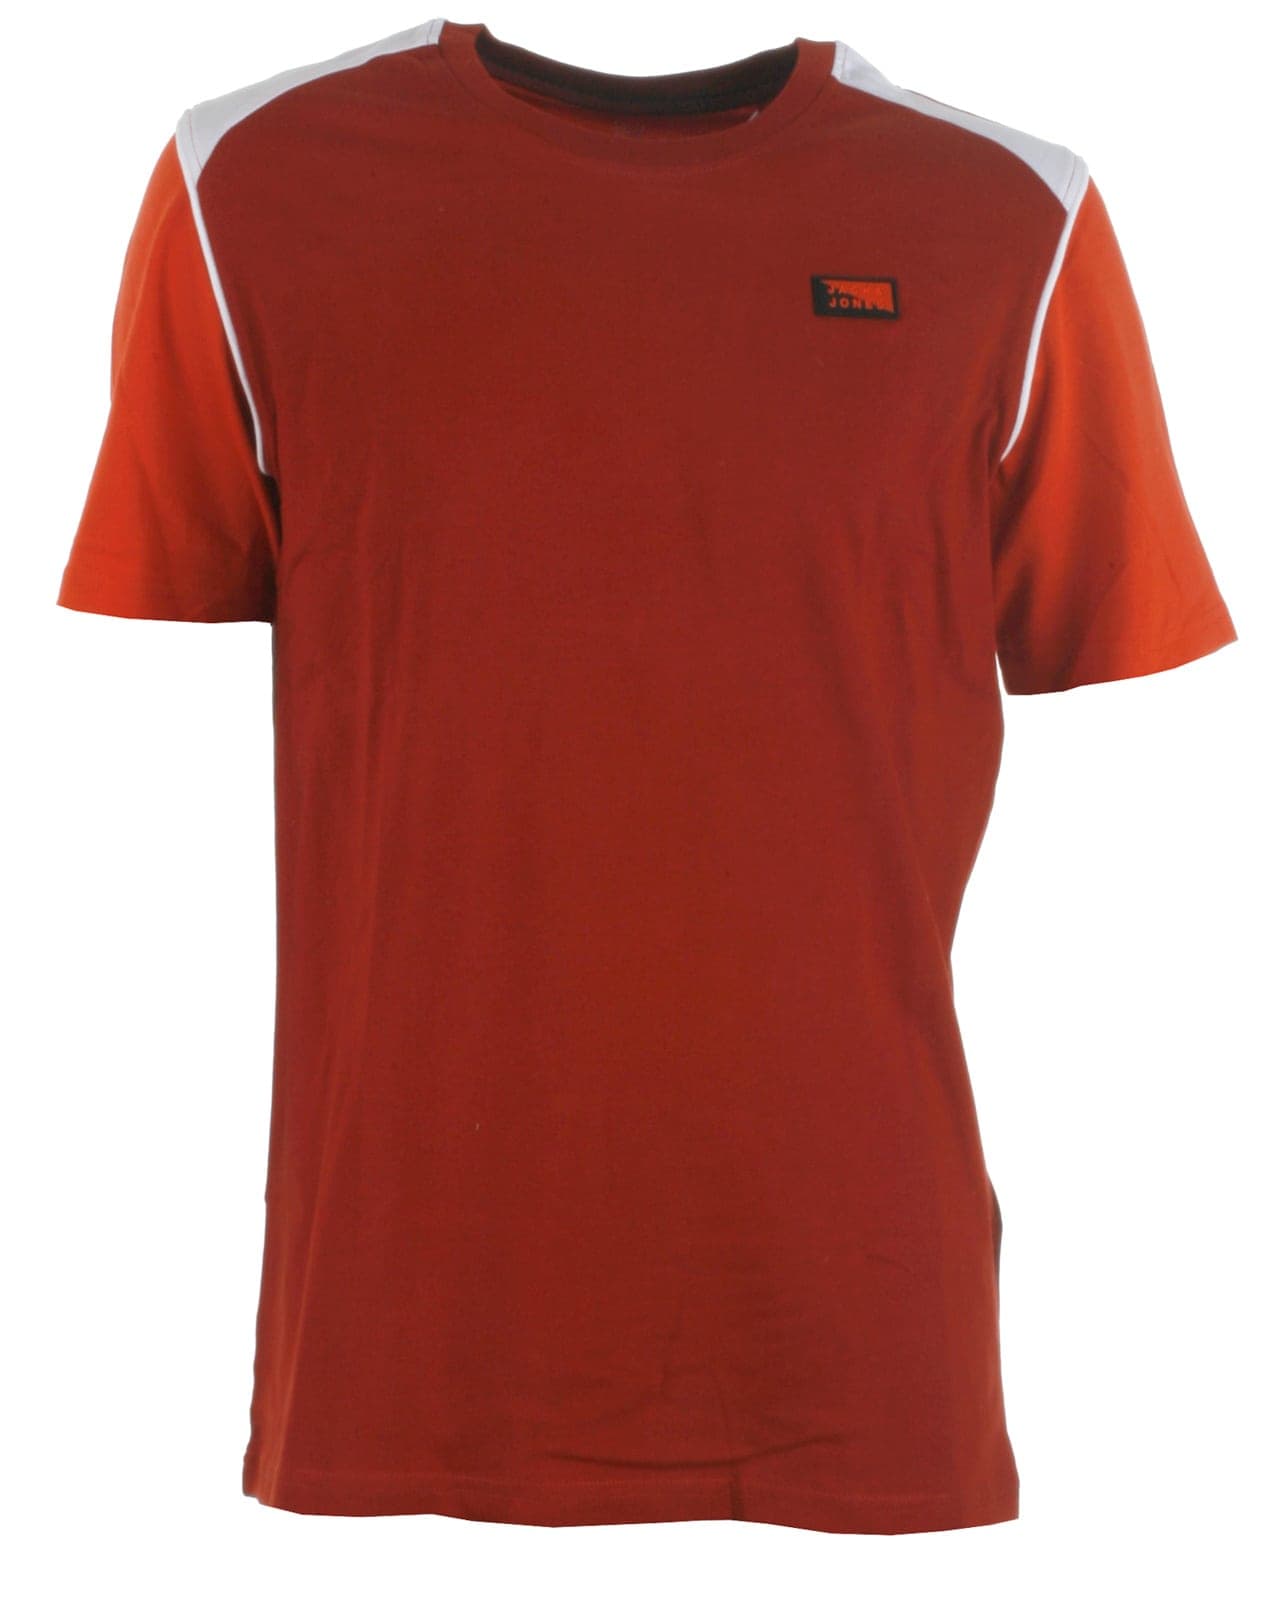 Rustrød t-shirt med korte ærmer i orange fra Jack & Jones, model 12186459 Carling - køb på umame.dk